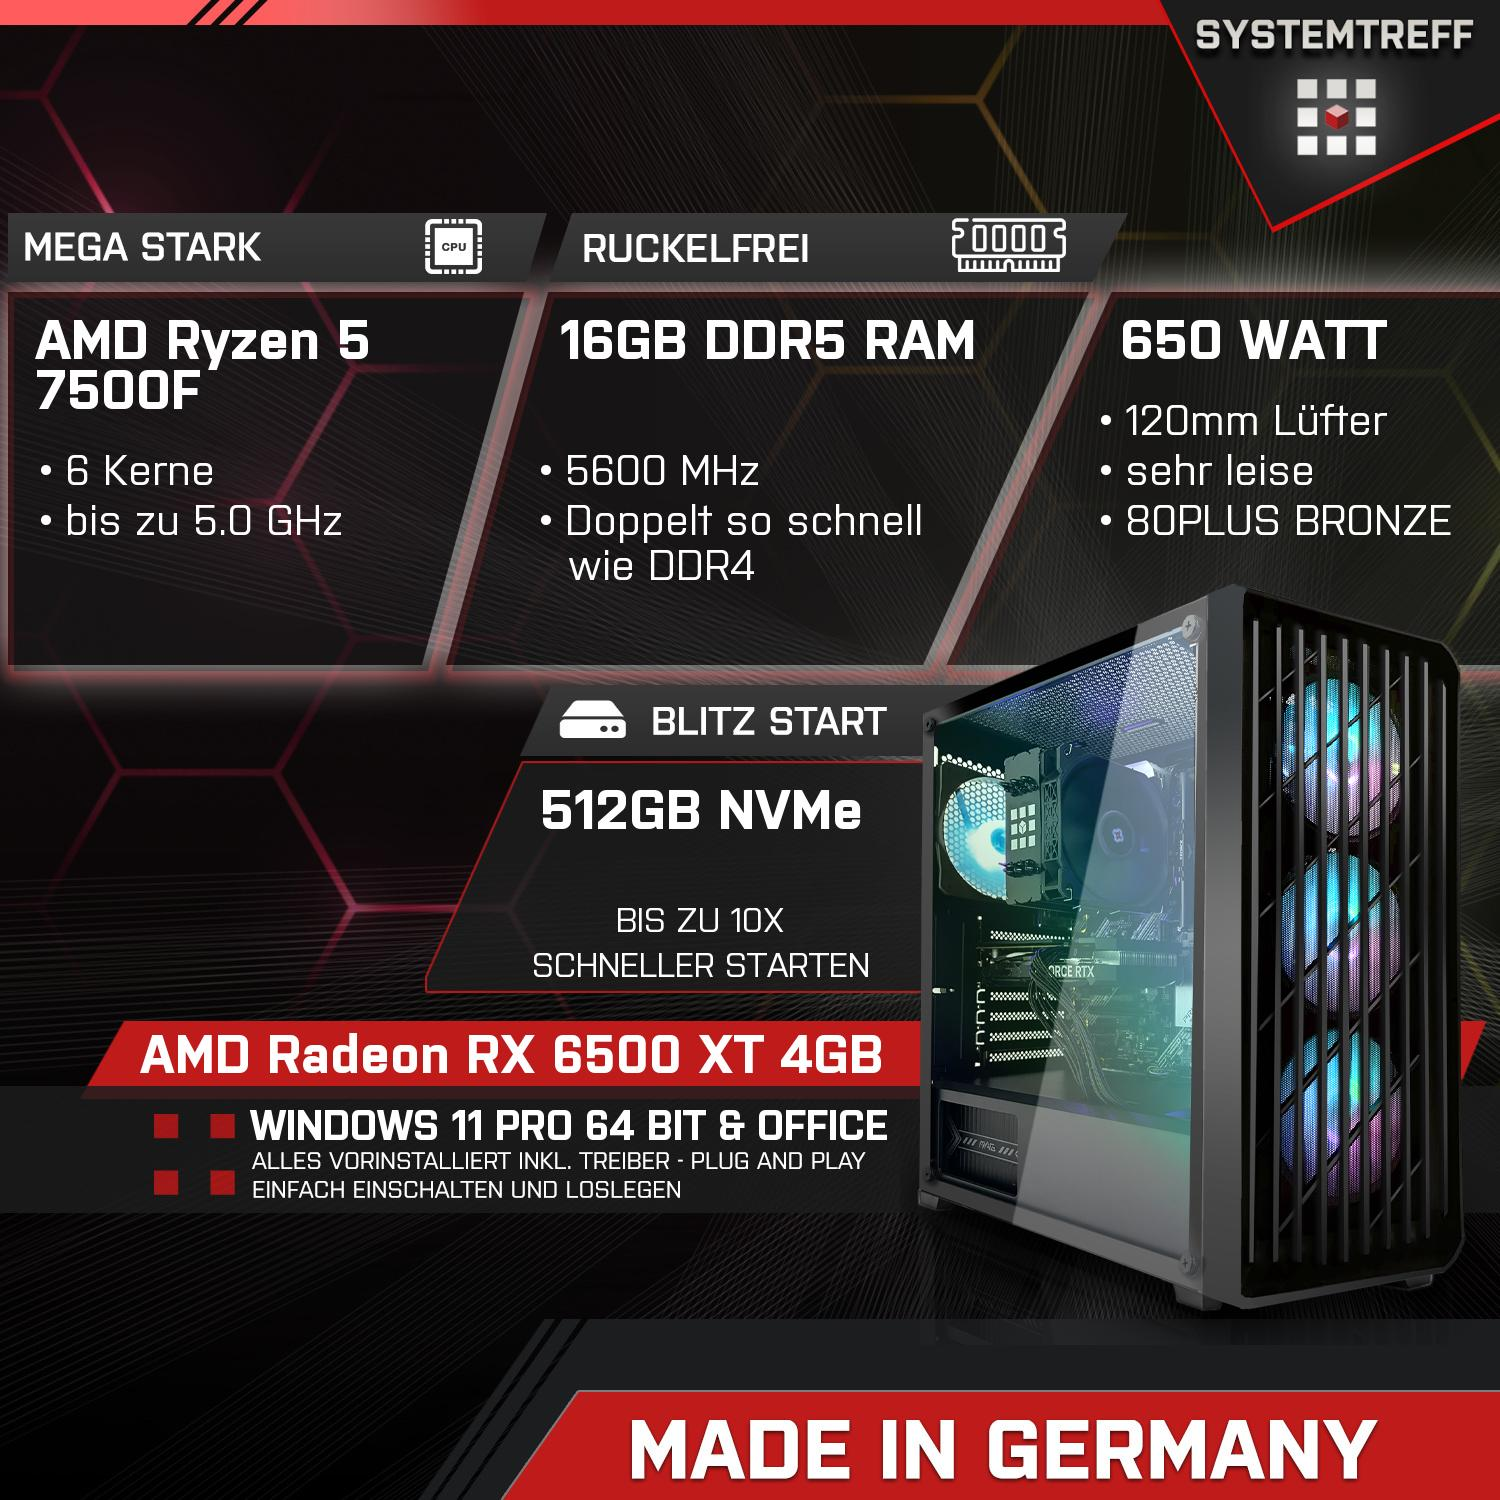 SYSTEMTREFF Gaming Komplett AMD Ryzen mit XT GB Komplett AMD 6500 GB mSSD, GB RX 16 4GB, 7500F, Radeon RAM, Prozessor, 4 7500F 512 5 PC